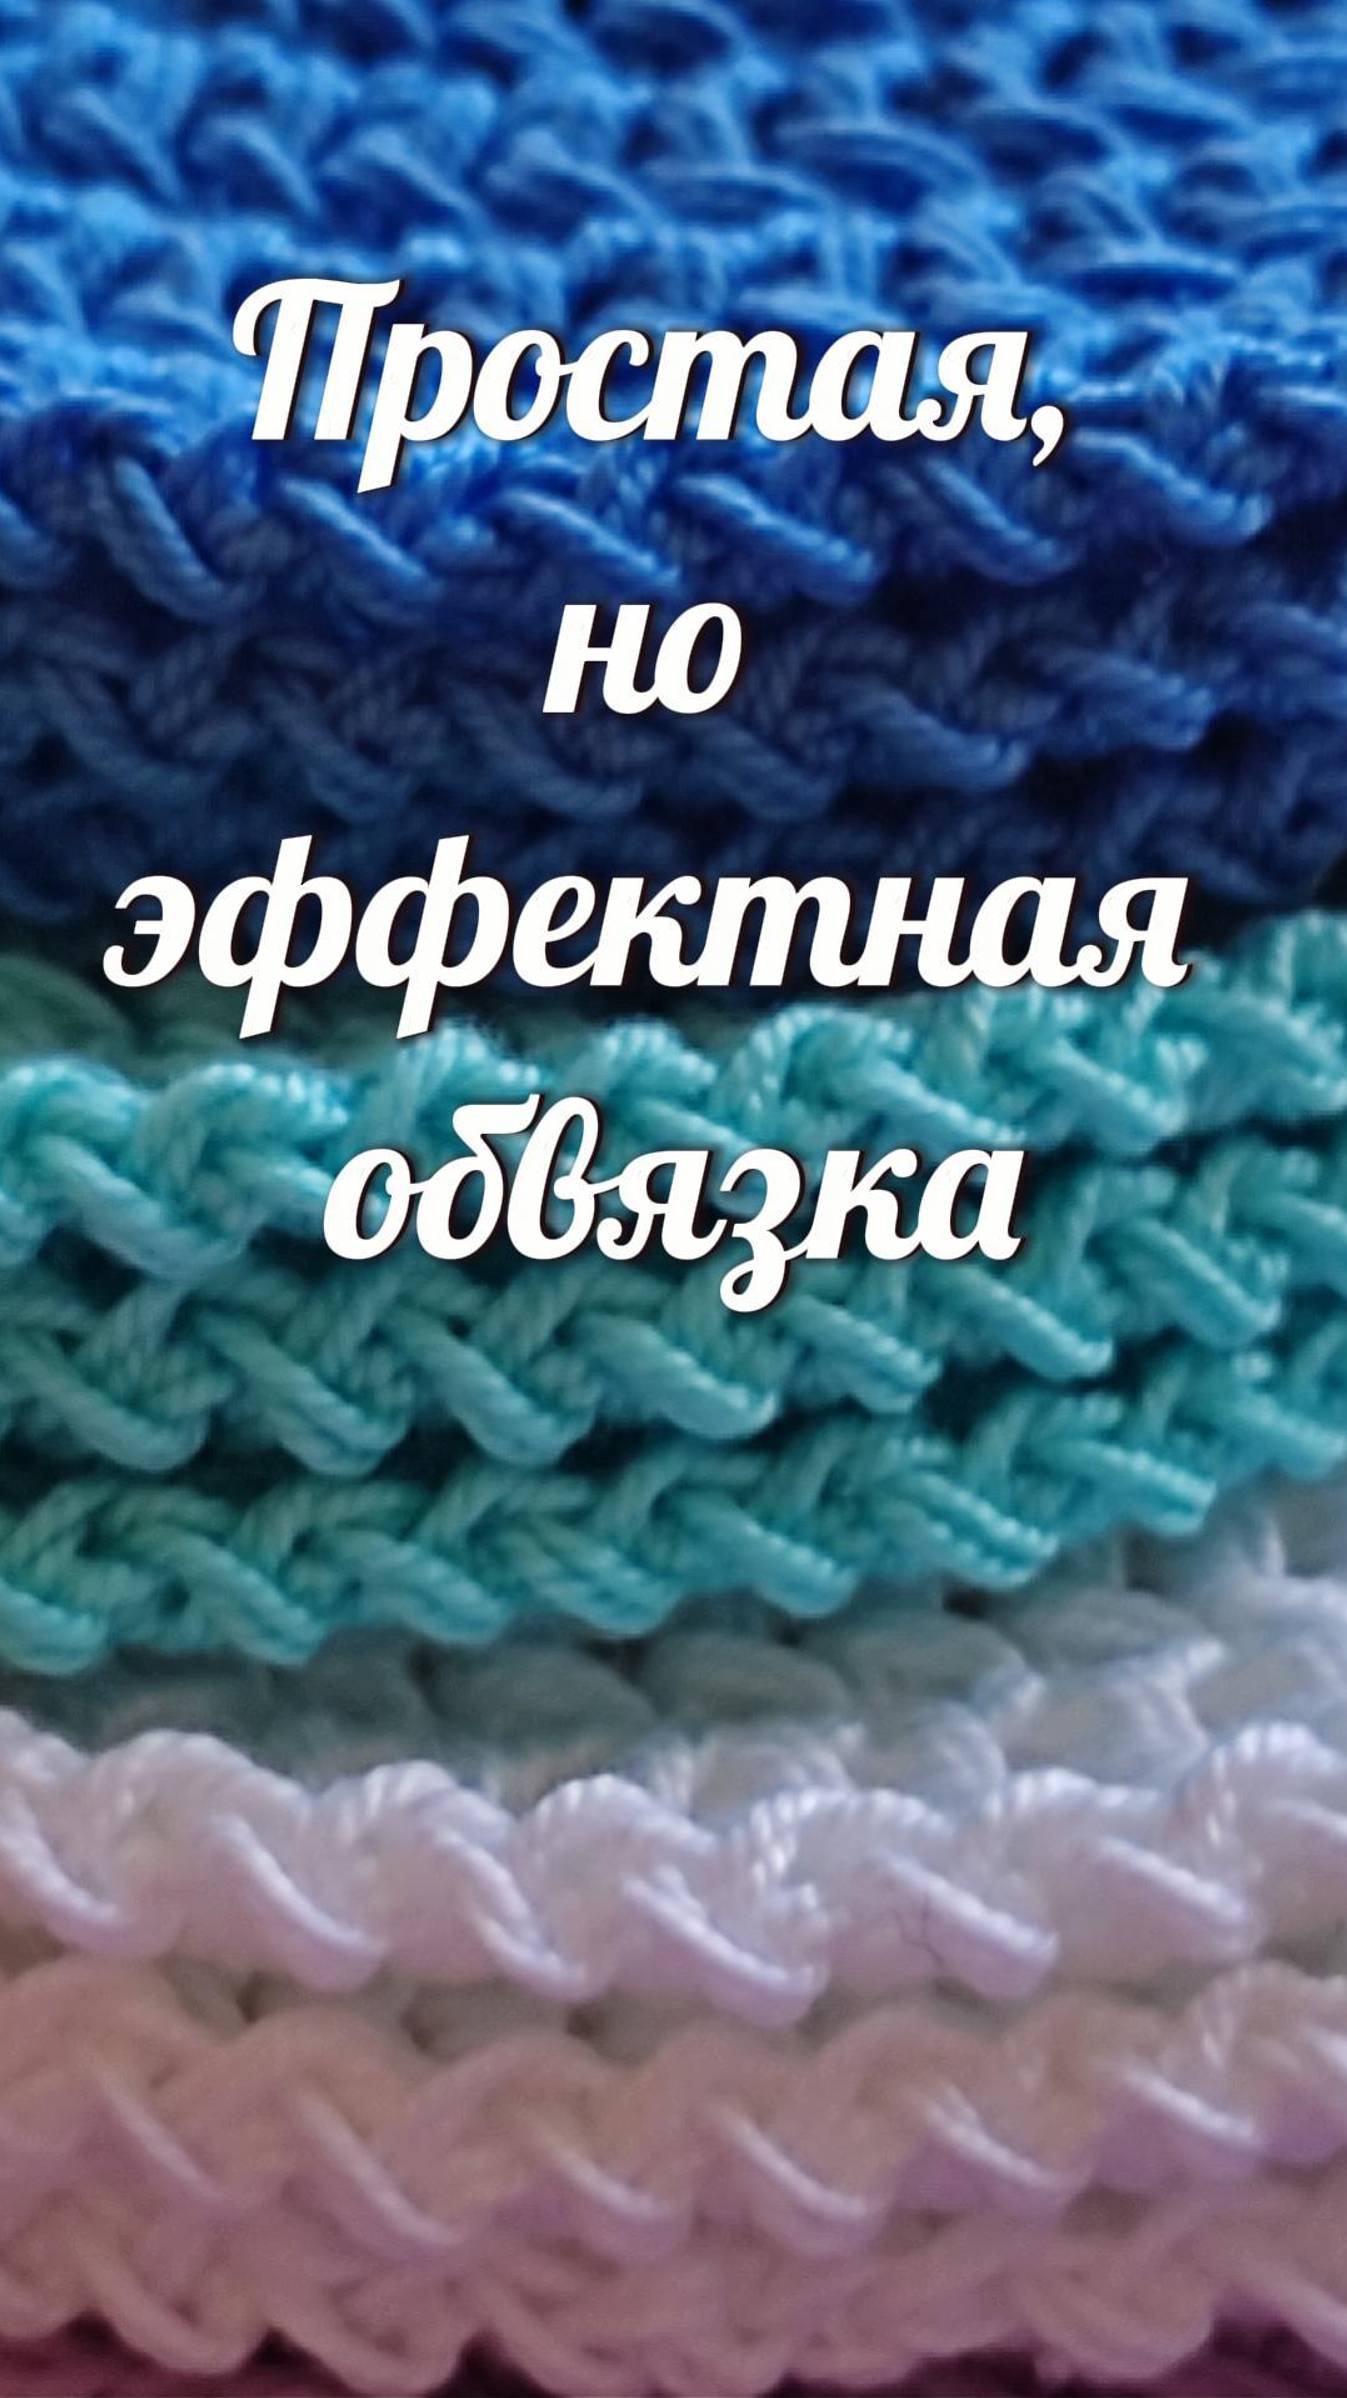 Эффектная обвязка крючком, которую свяжет каждый! #Shorts #crochet #easy #crocheting #handmade